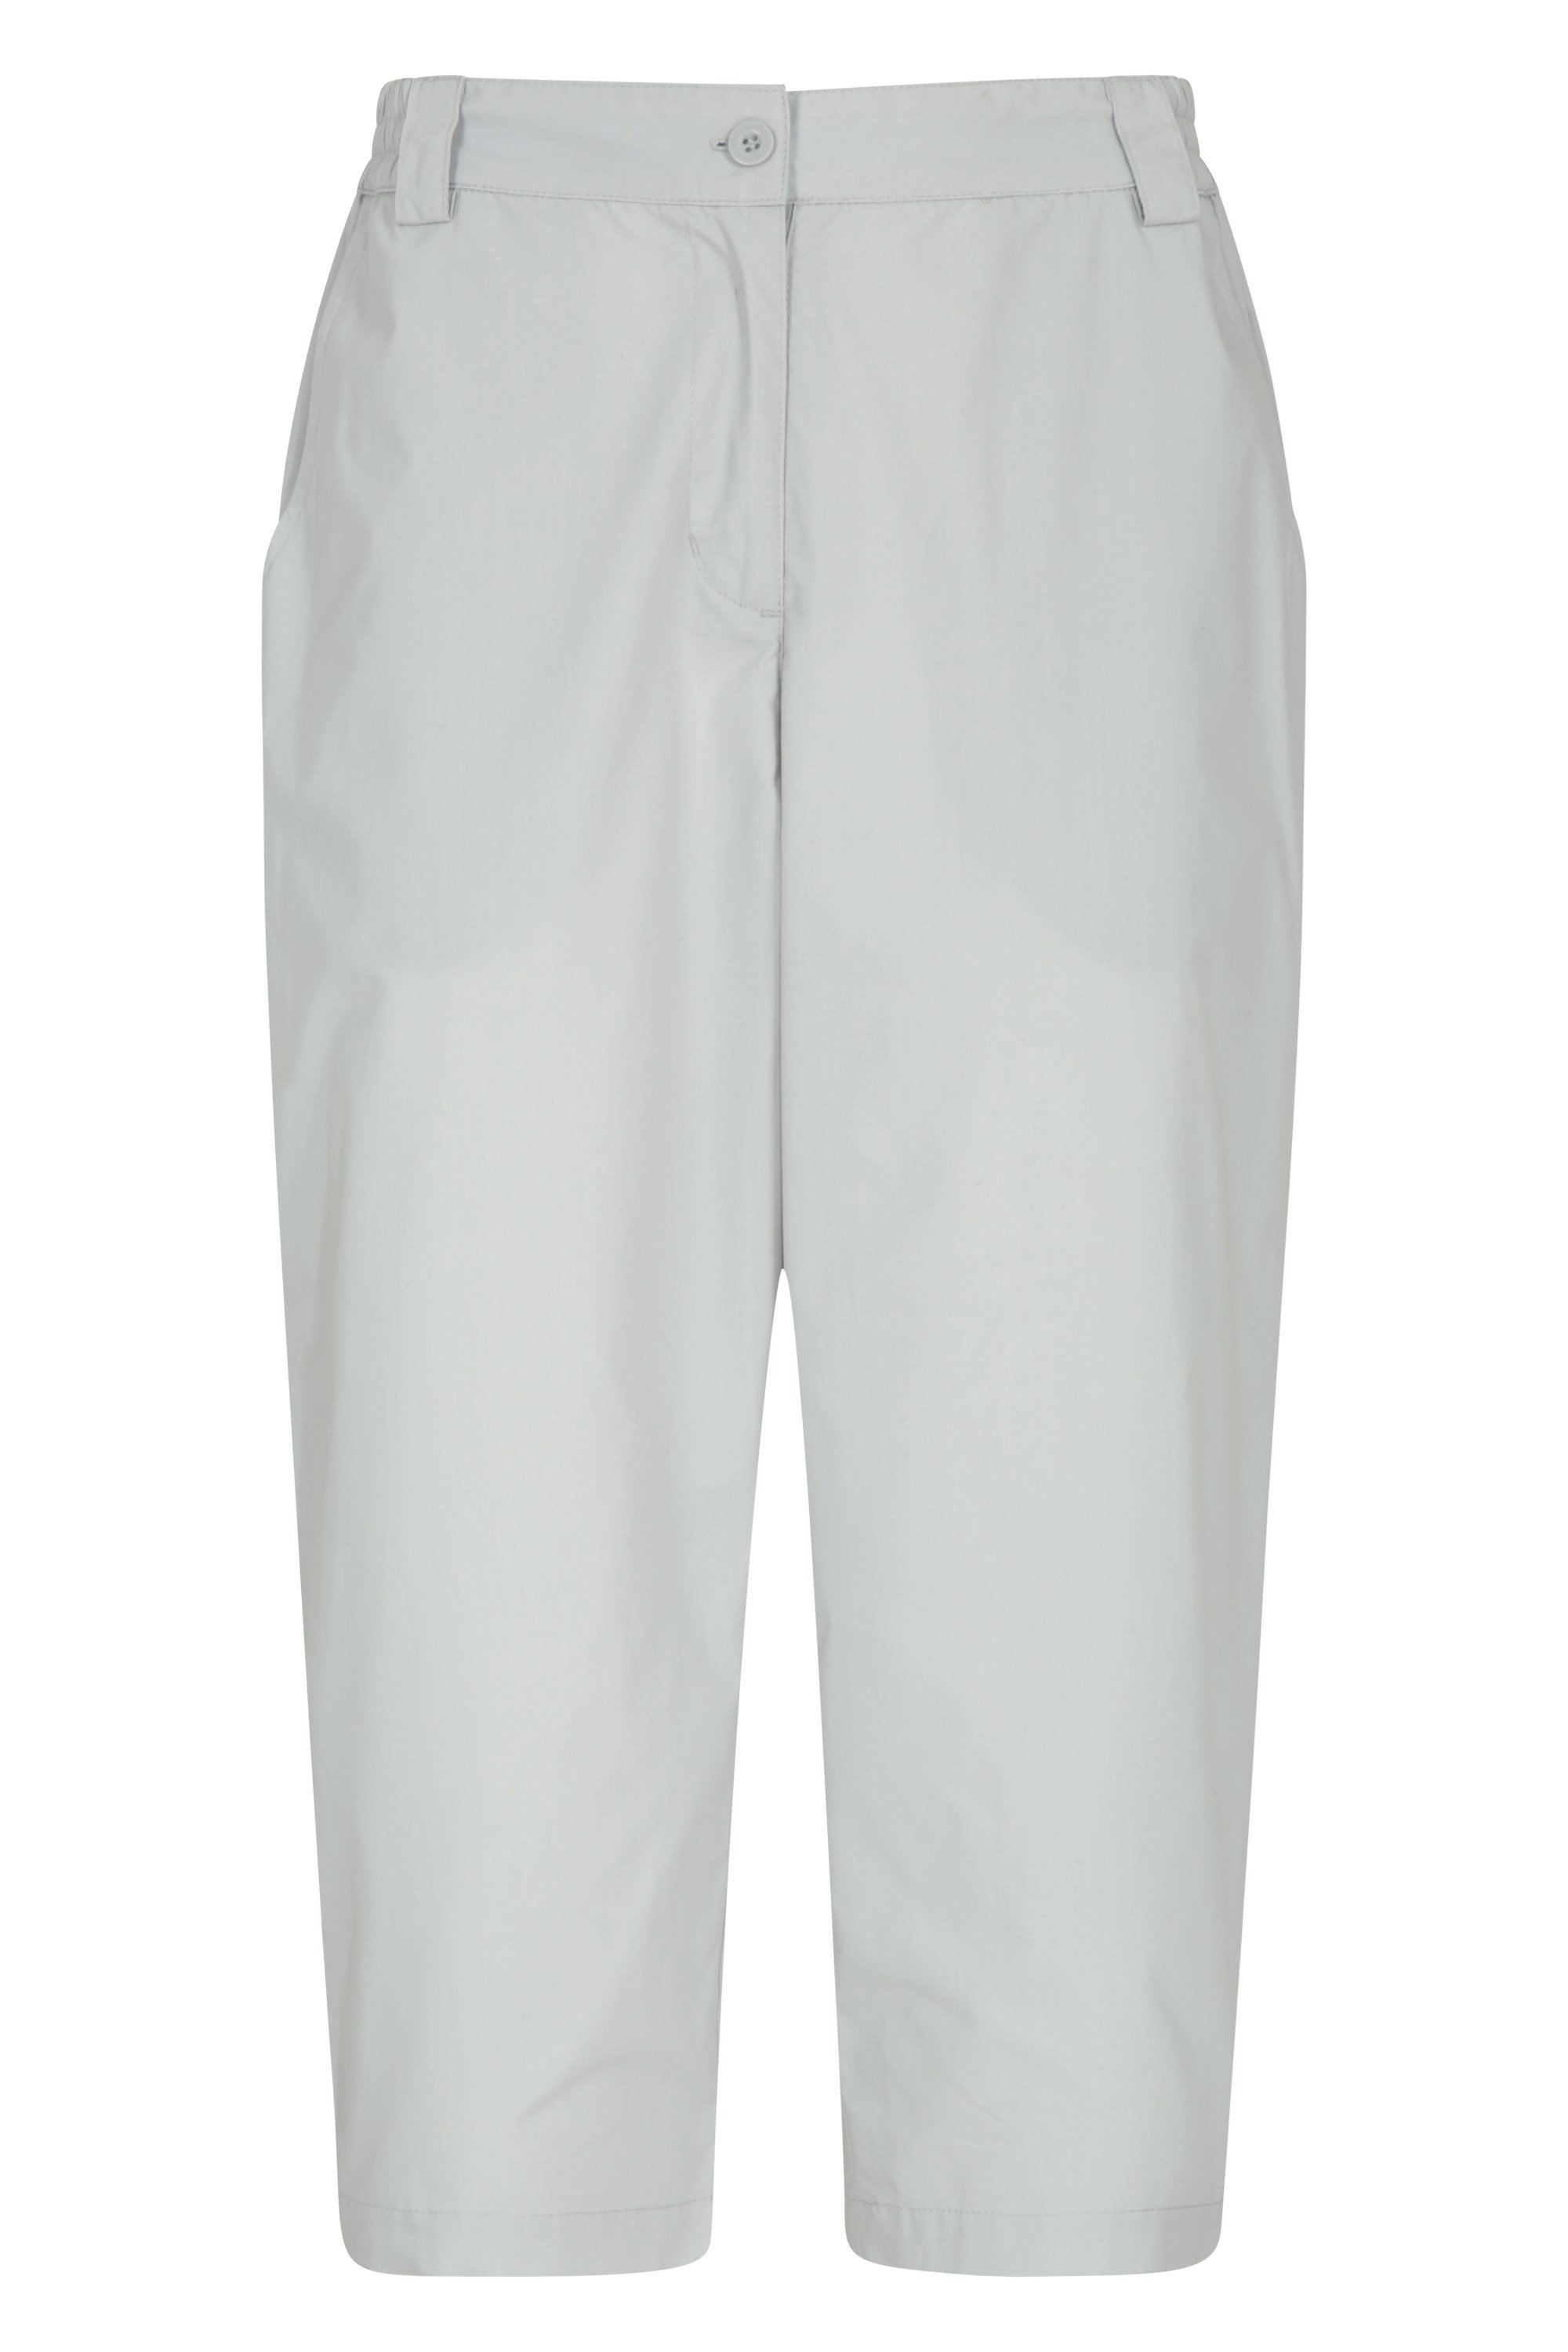 Quest - Damskie Spodnie Capri - Grey